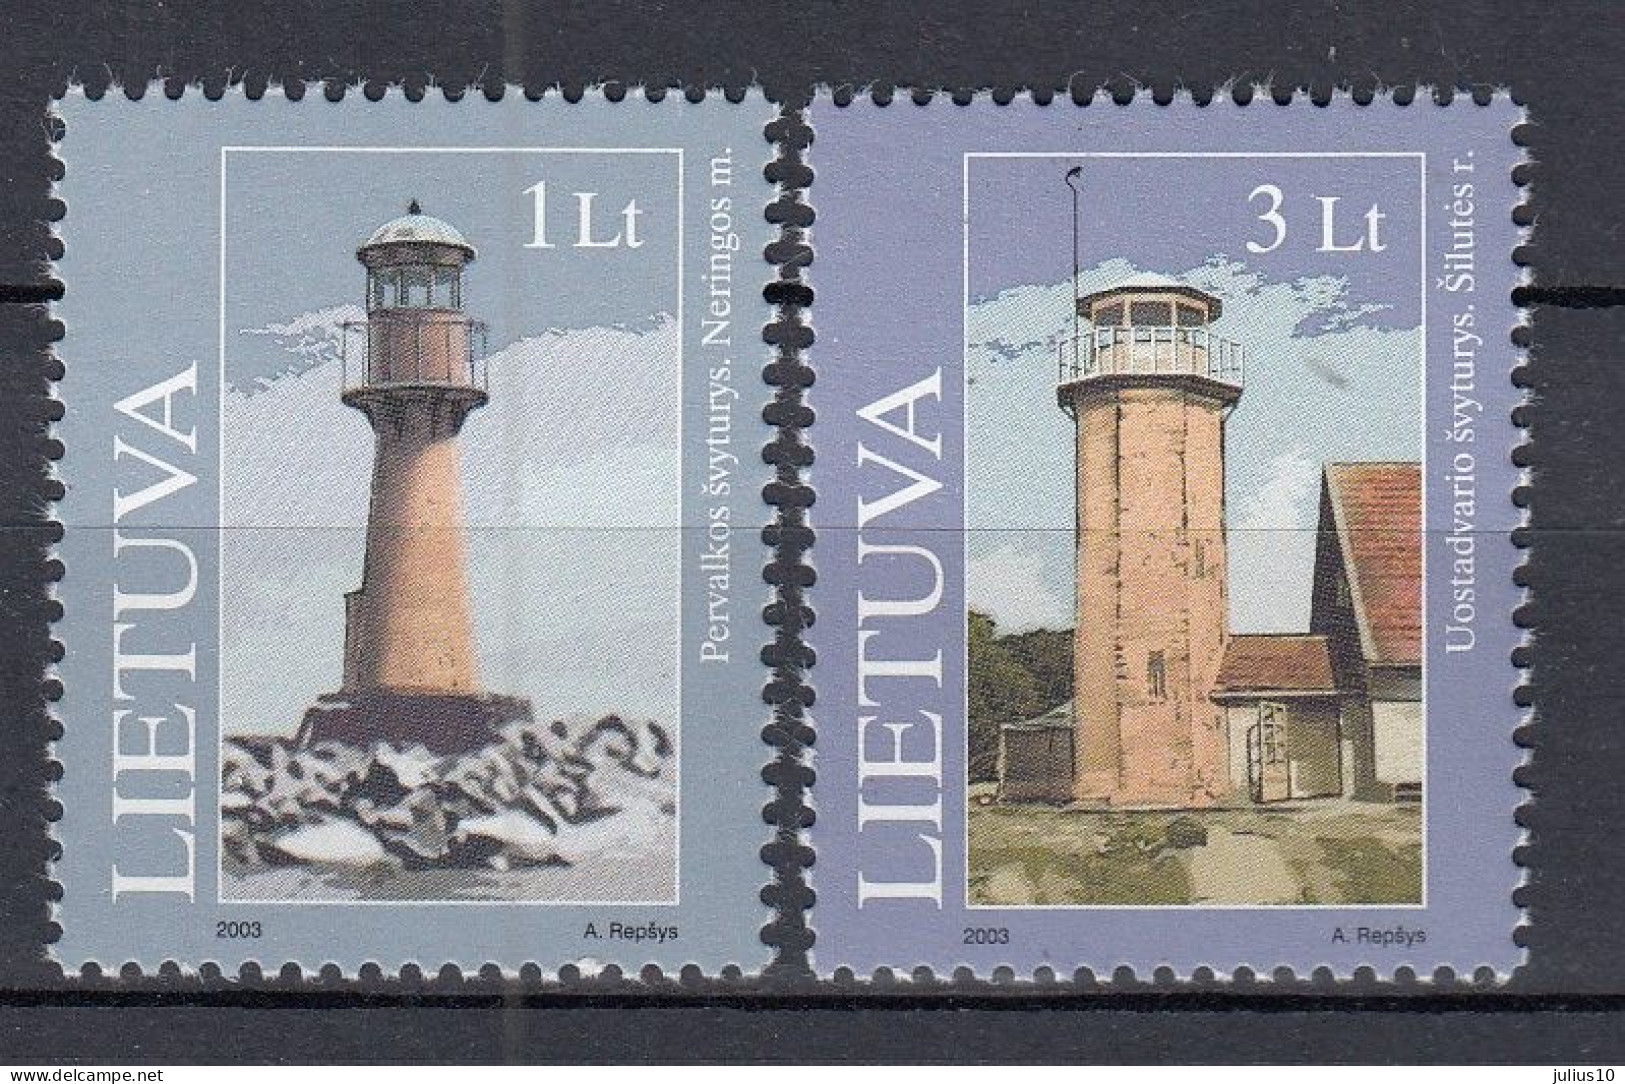 LITHUANIA 2003 Lighthouses MNH(**) Mi 814-815 #Lt1014 - Lithuania